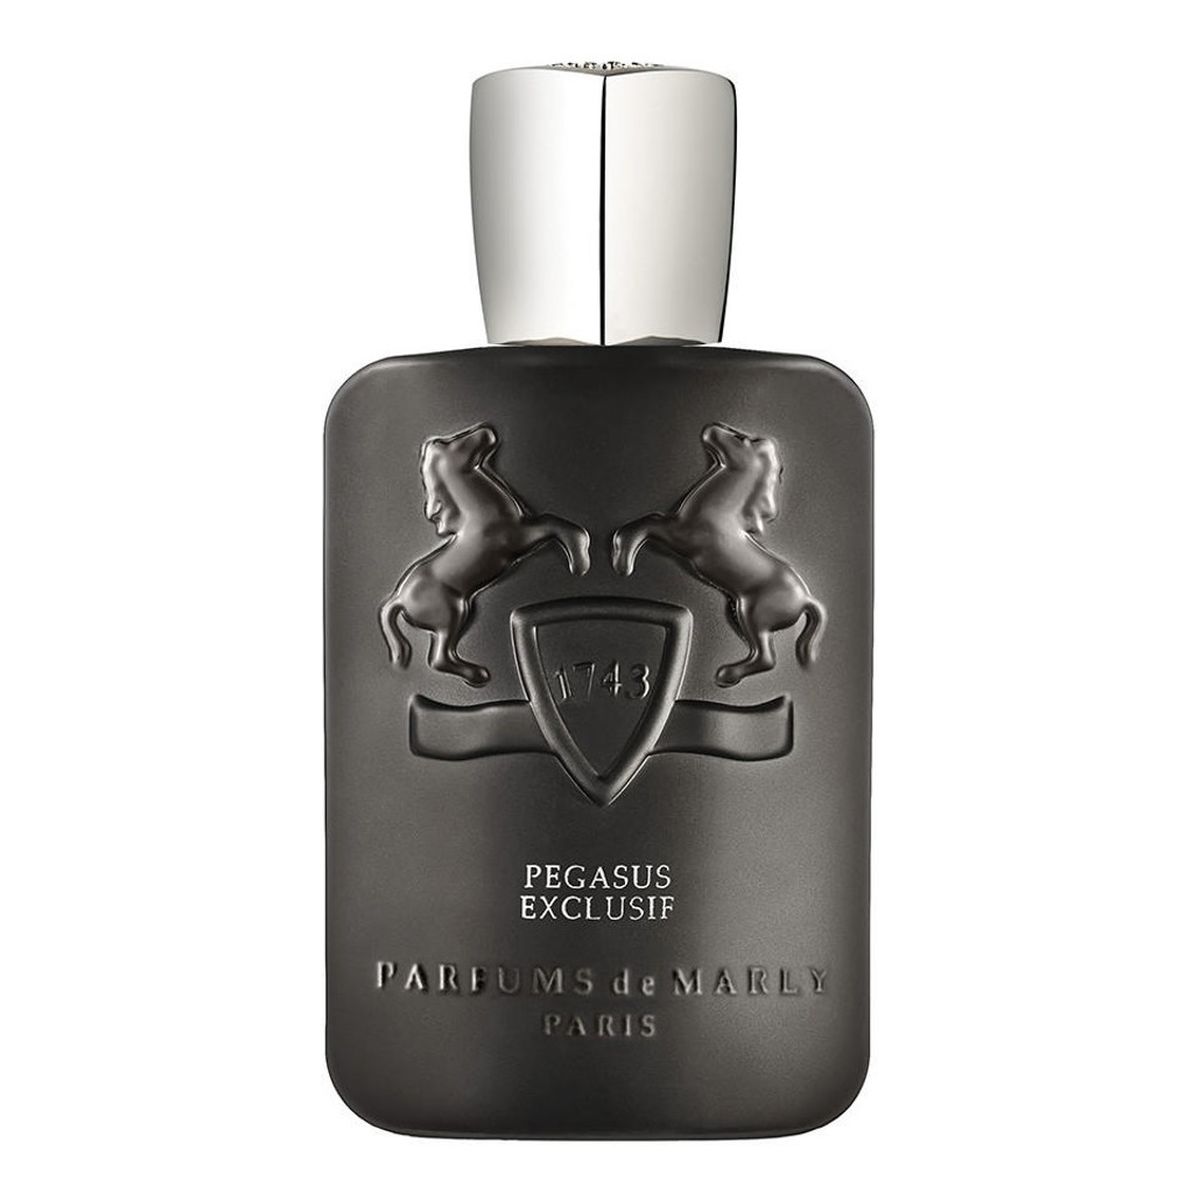 Parfums de Marly Pegasus Exclusif Perfumy spray 125ml